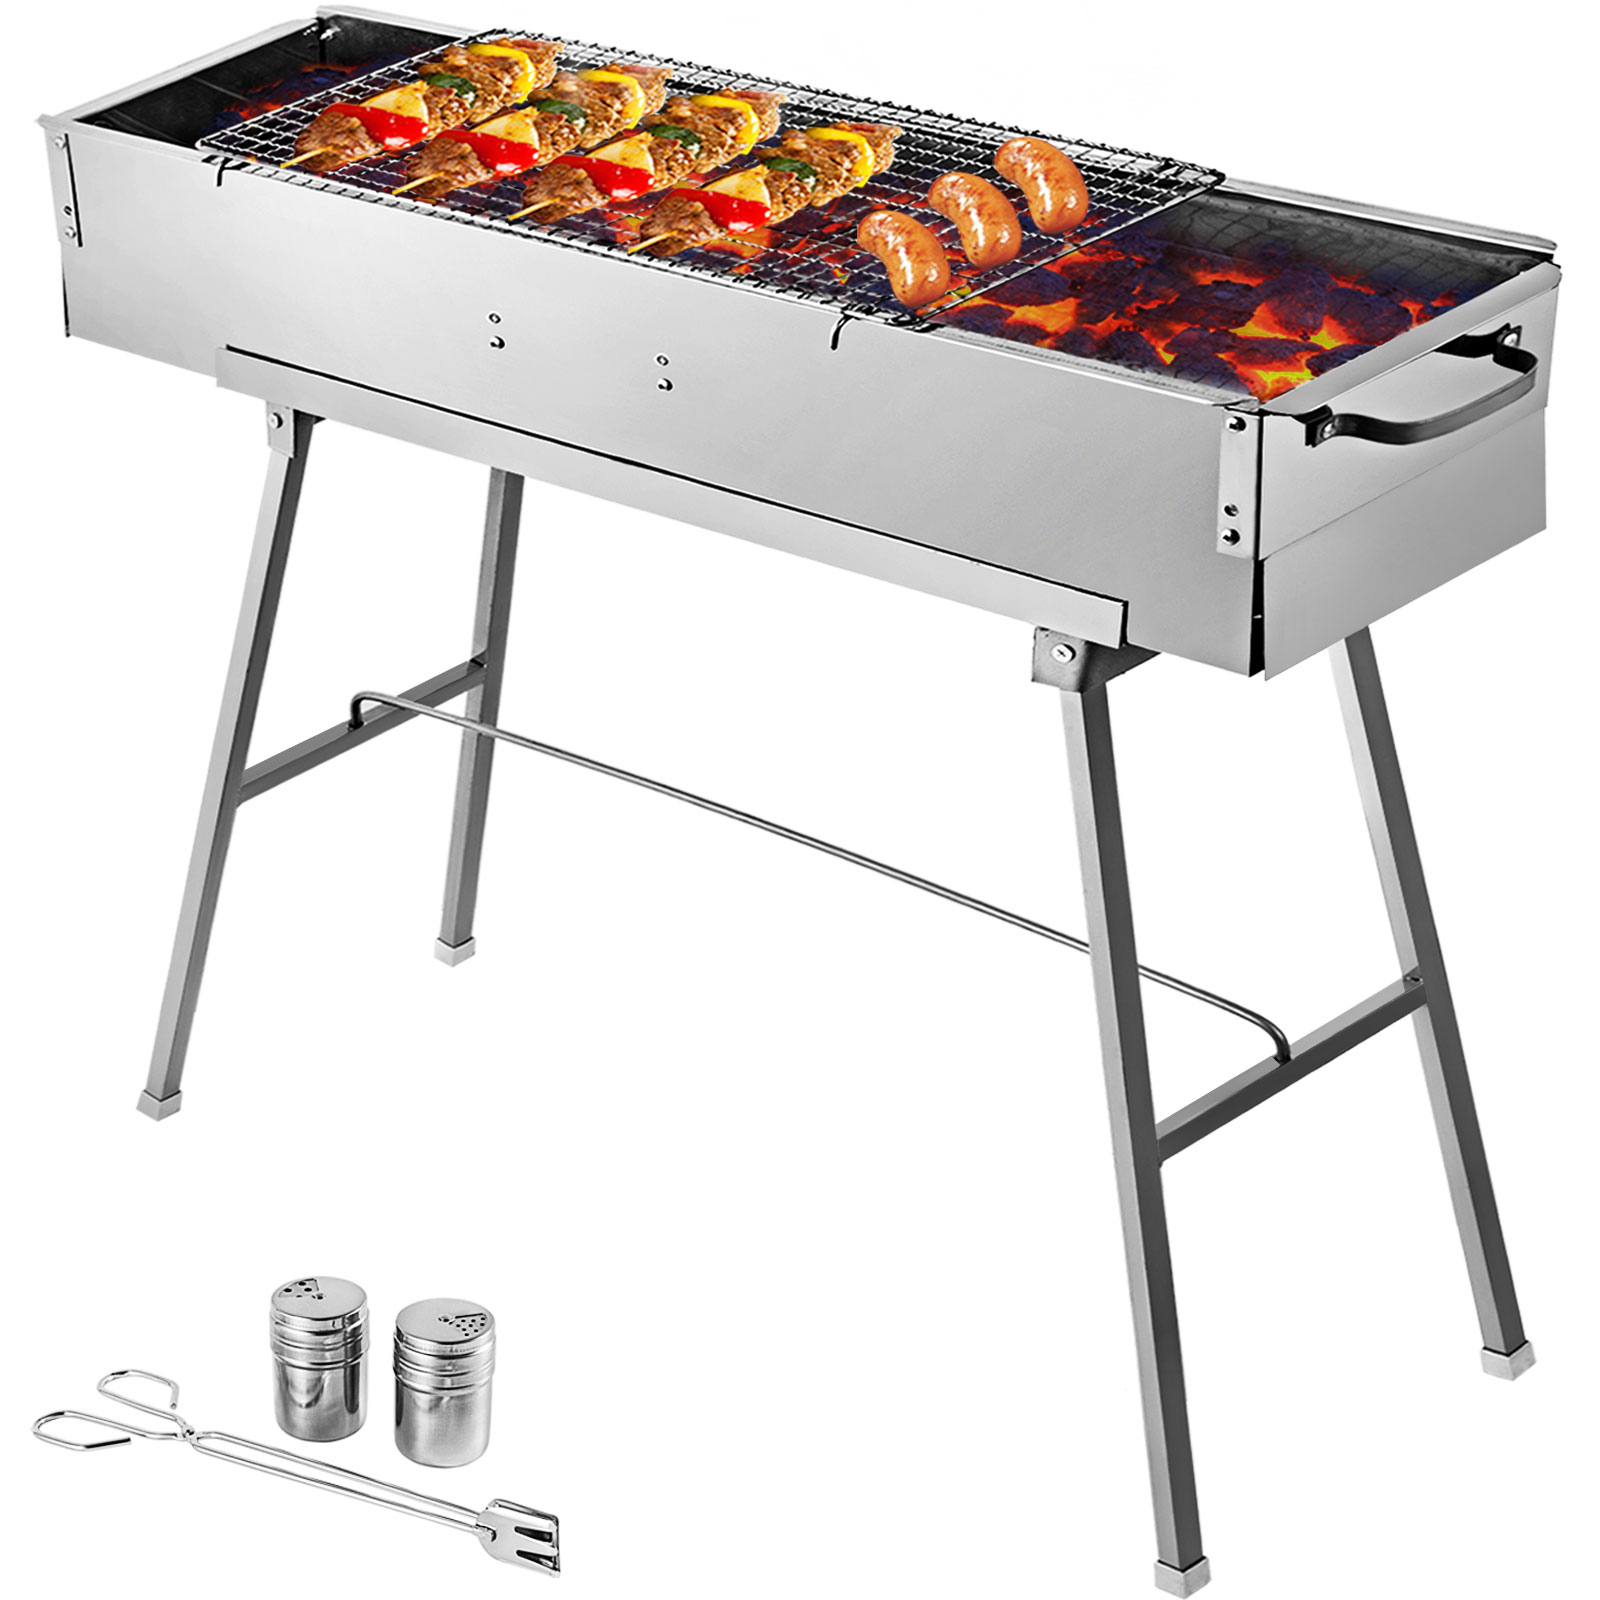 Barbecue elettrico commerciale in acciaio inox piastra per arrosti 72,7 cm temperatura regolabile da 50 °C a 300 °C piastra per barbecue 4400 W 